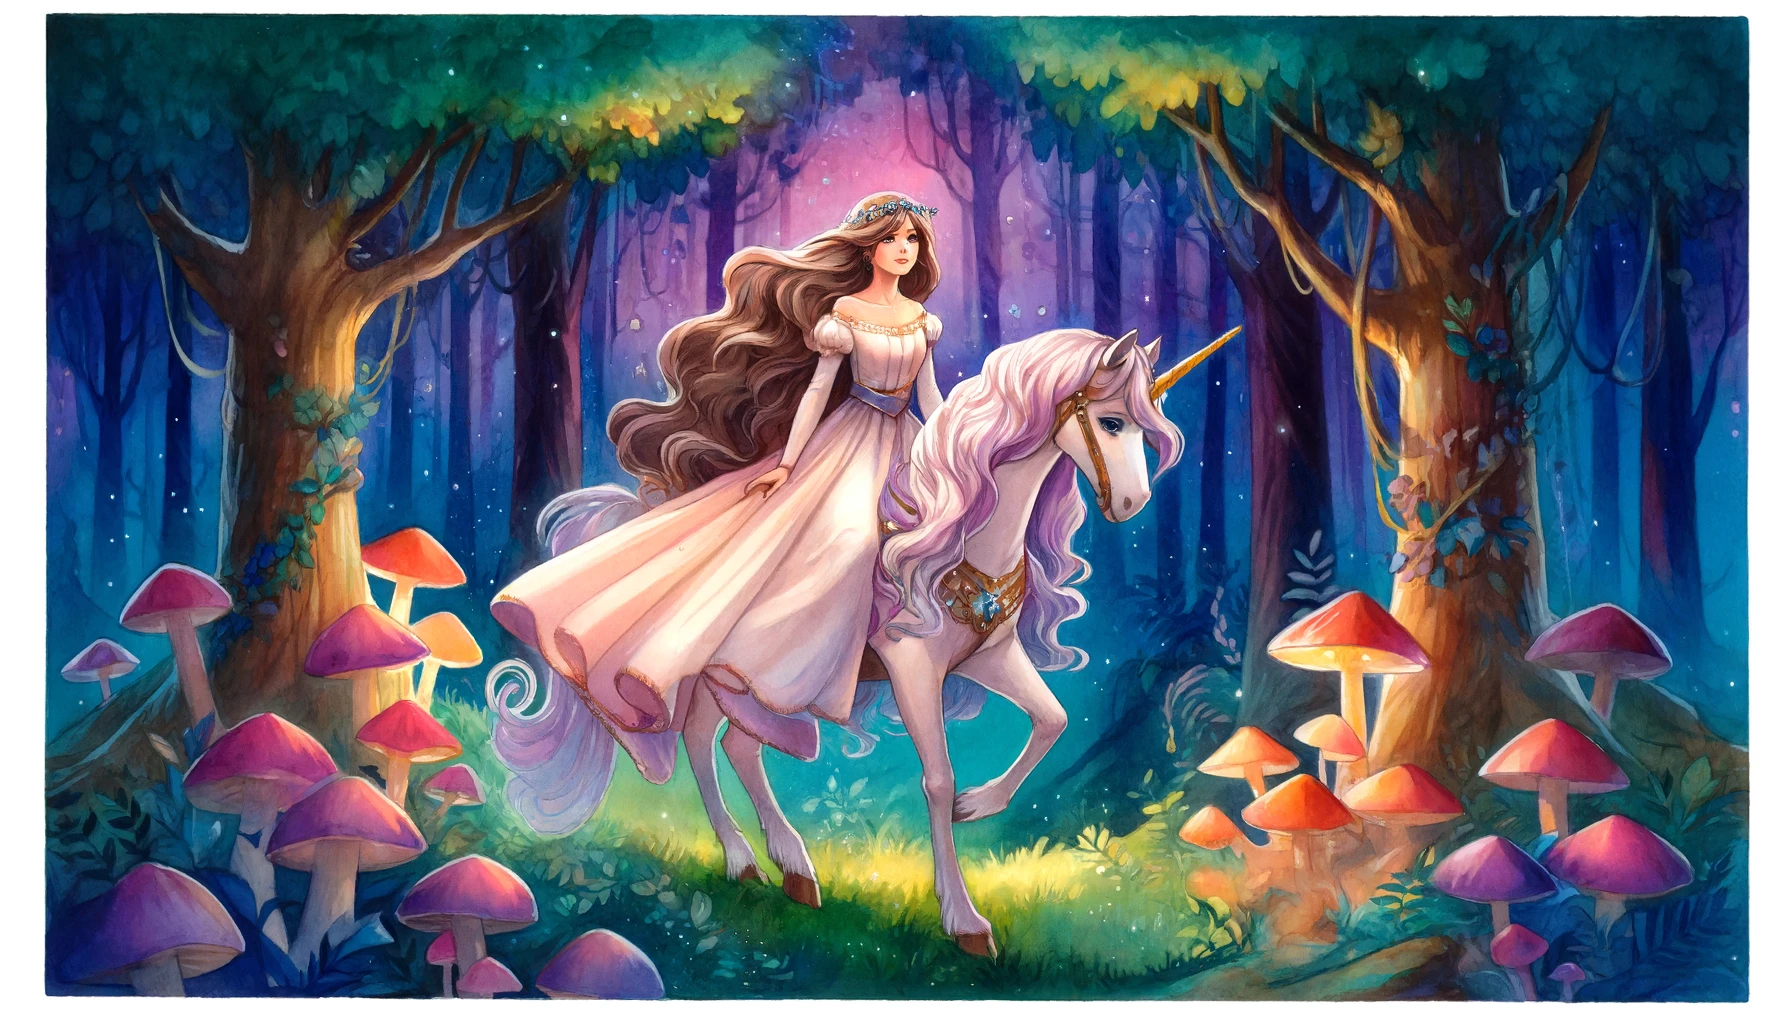 Die Rebellische Prinzessin Seraphinas Flucht in den Zauberwald